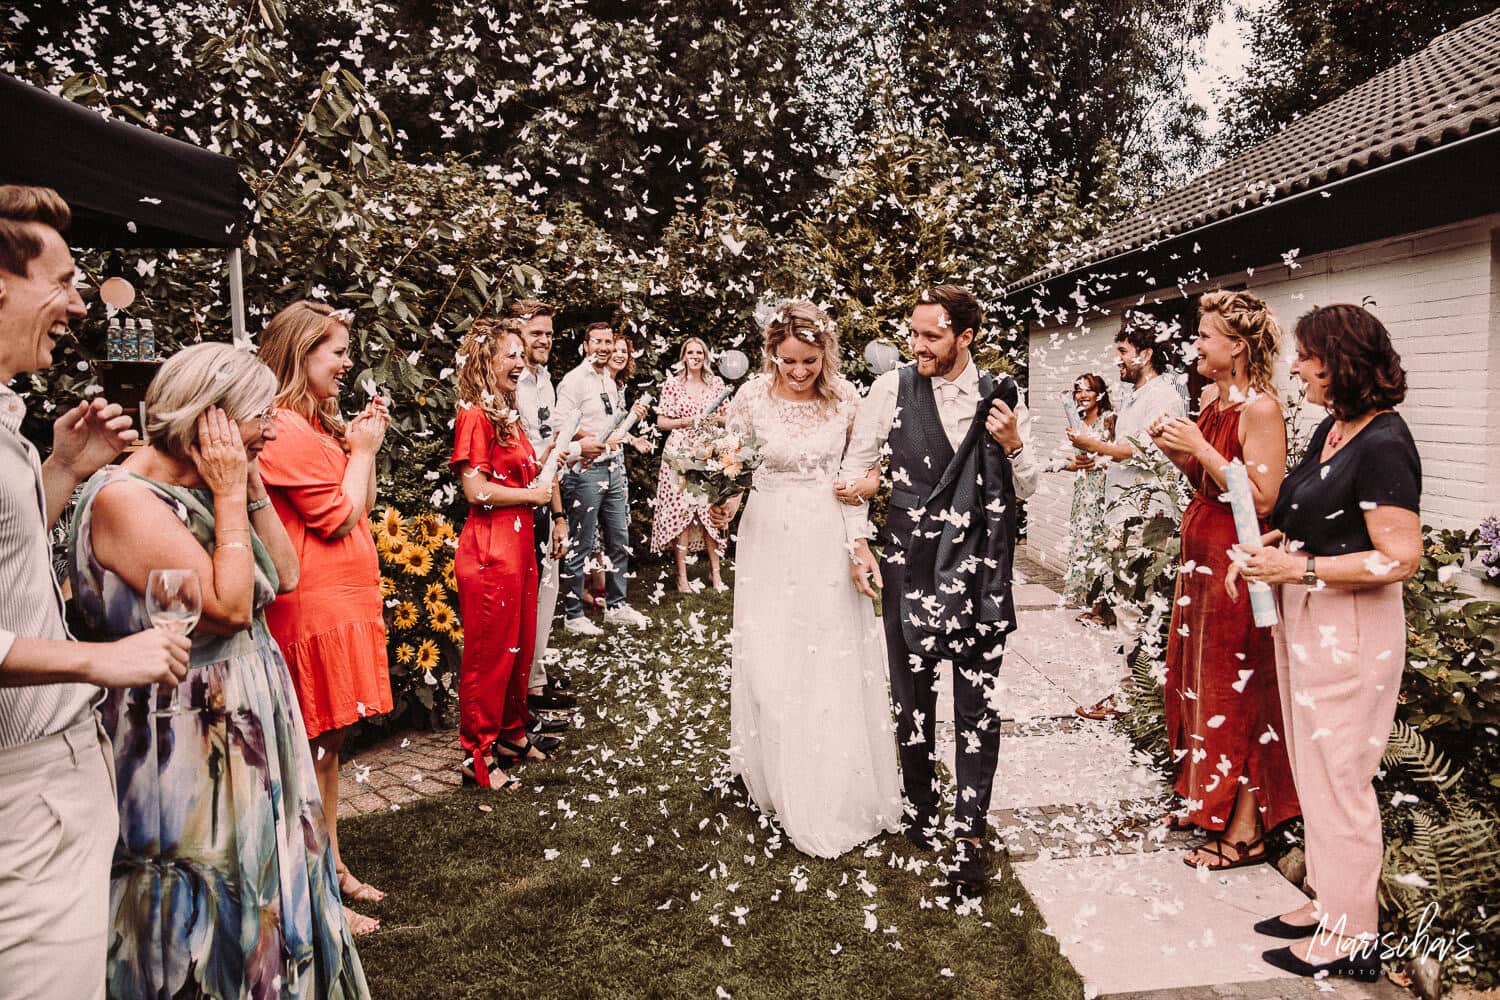 Bruidsfotograaf voor een bruidsreportage van een bruiloft in regio Drenthe